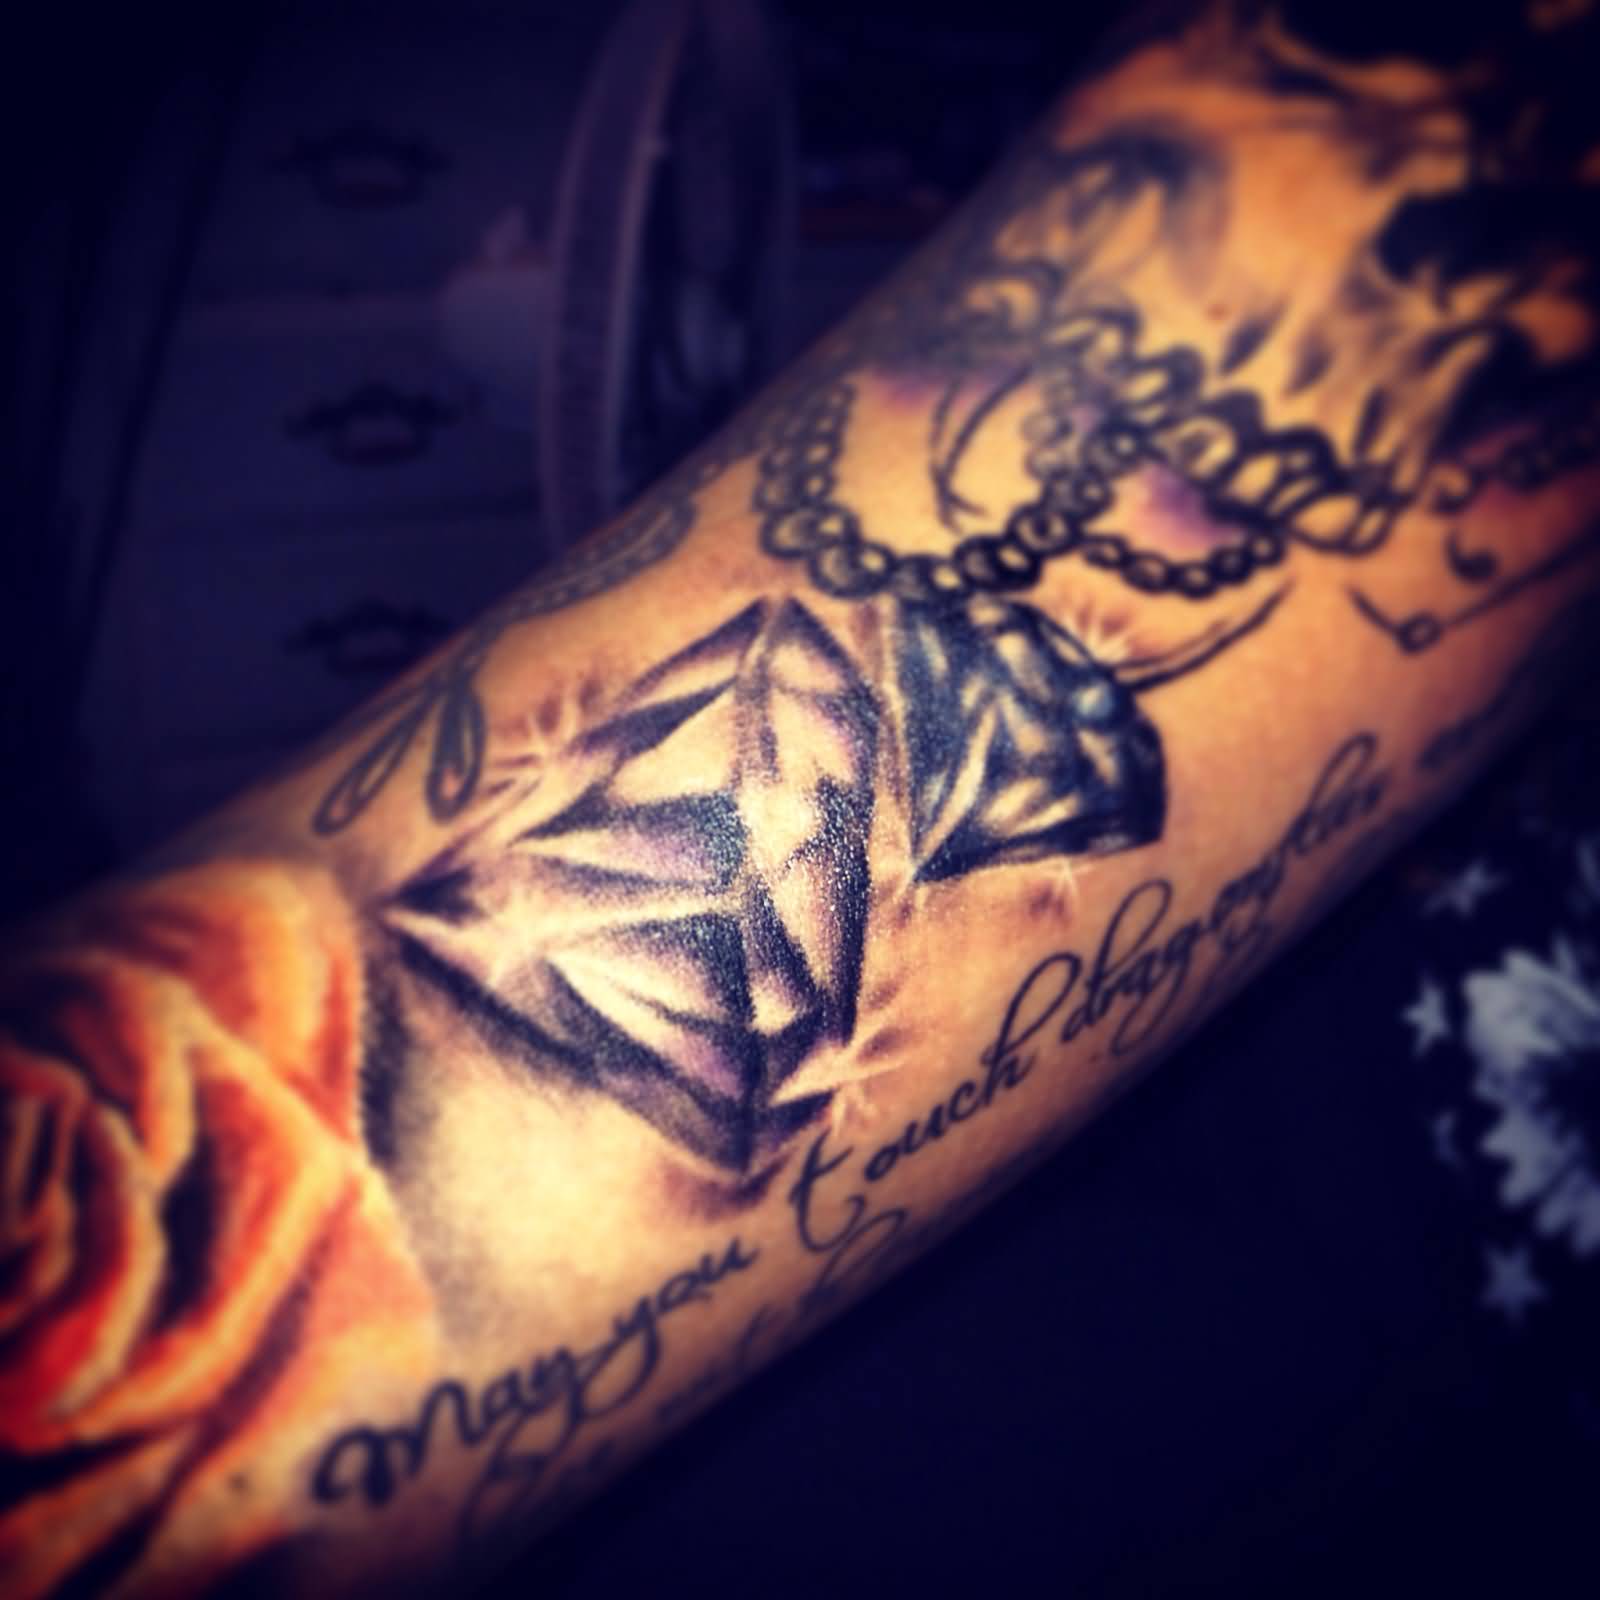 Black And Grey Diamond Tattoo On Arm Sleeve